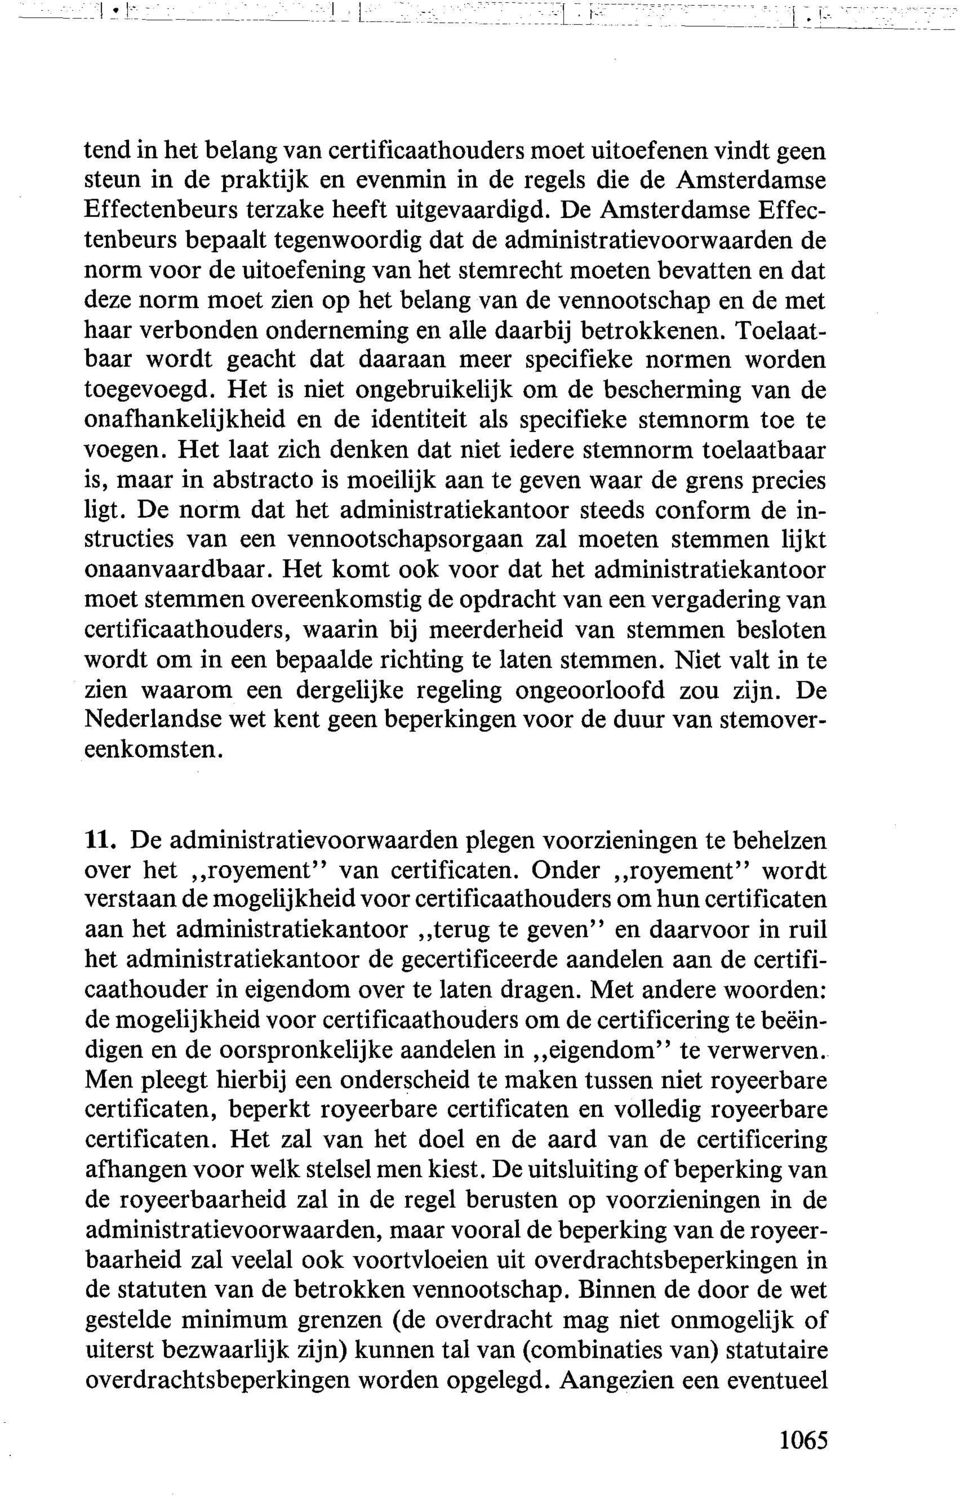 De Amsterdamse Effectenbeurs bepaalt tegenwoordig dat de administratievoorwaarden de norm voor de uitoefening van het stemrecht moeten bevatten en dat deze norm moet zien op het belang van de